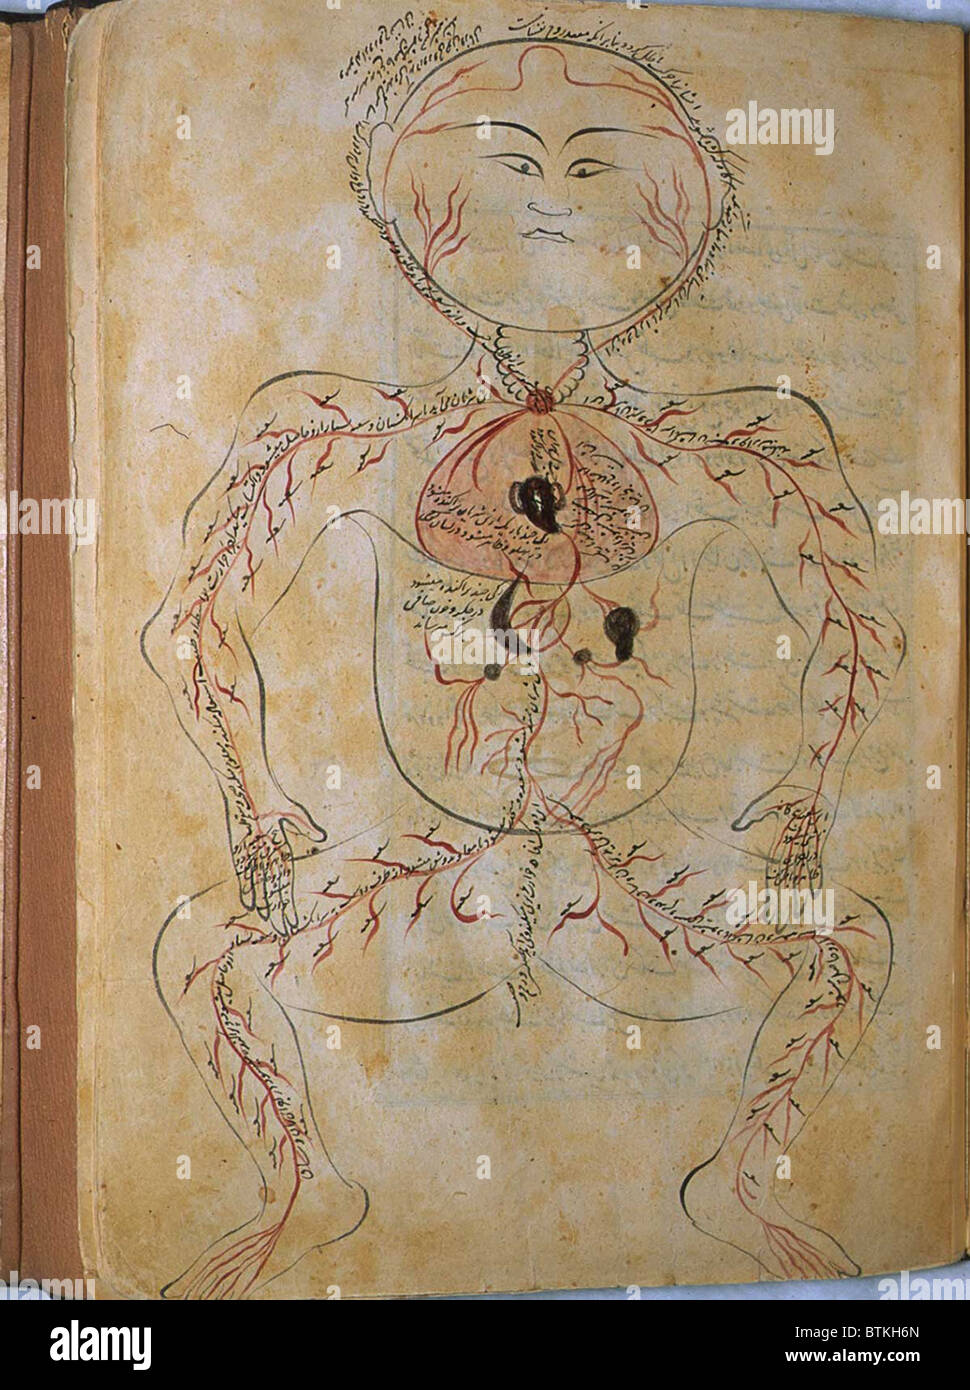 La circolazione umana sistema, da MANSUR'S ANATOMY, creato dal persiano di studioso e di medico, Mansur ibn Ilyas (ca. 1370-1423). Le arterie sono mostrati con gli organi interni indicato in opaco acquerelli. Copia completata da Hasan ibn Ahmad, lavorando in Isfahan, nel 1488. Foto Stock